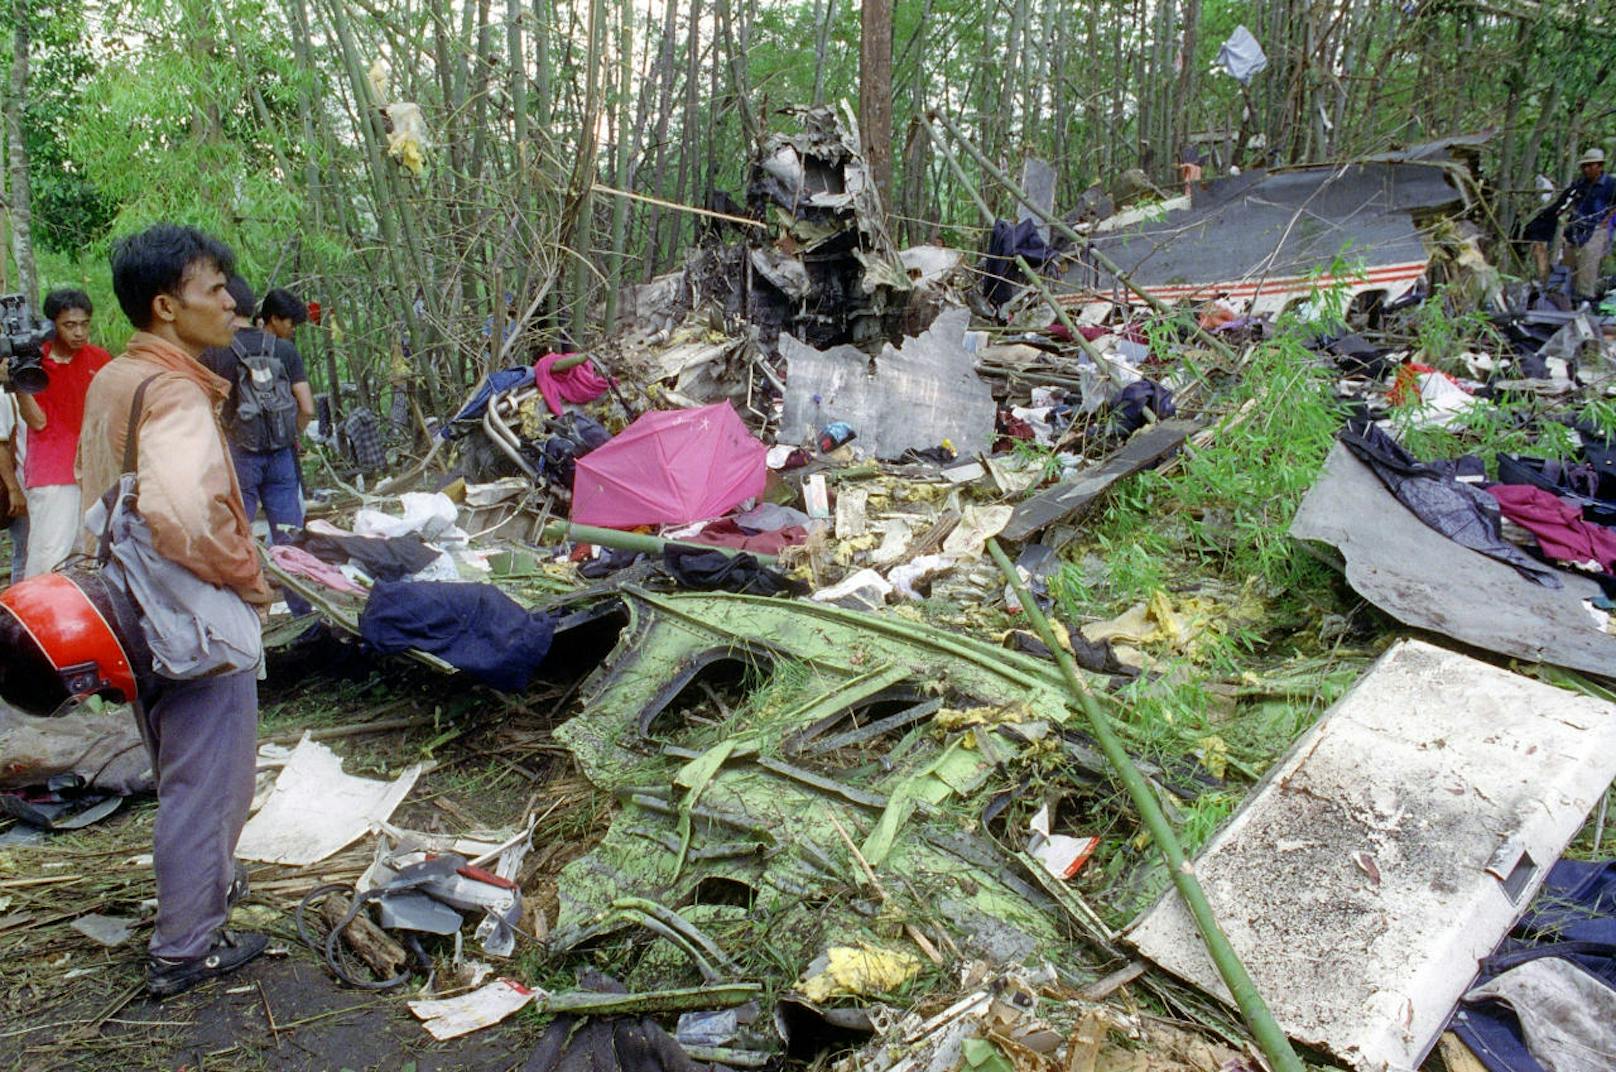 1991 kam es zu einer der größten Katastrophen der österreichischen Geschichte: In Thailand stürzte eine Lauda Air-Maschine ab, 223 Menschen starben.